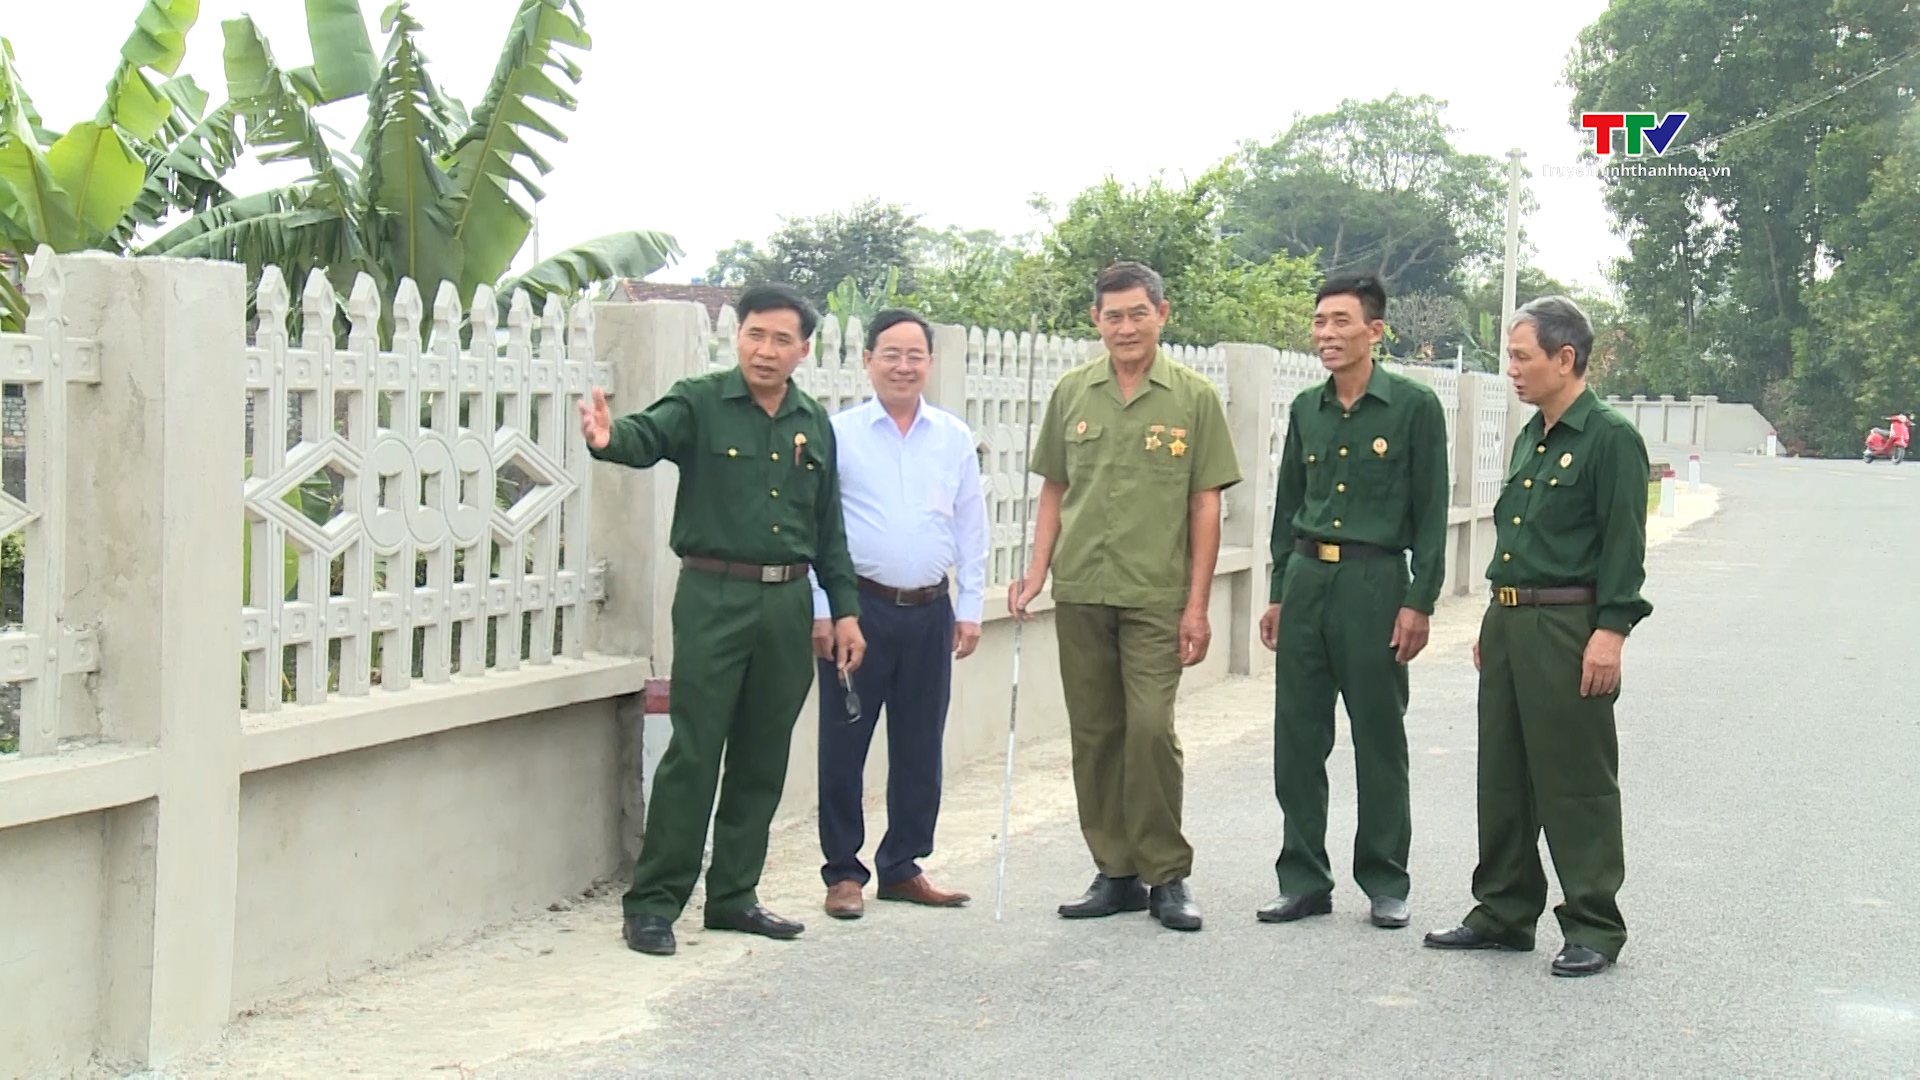 Cựu chiến binh Thanh Hóa chung tay xây dựng nông thôn mới- Ảnh 1.